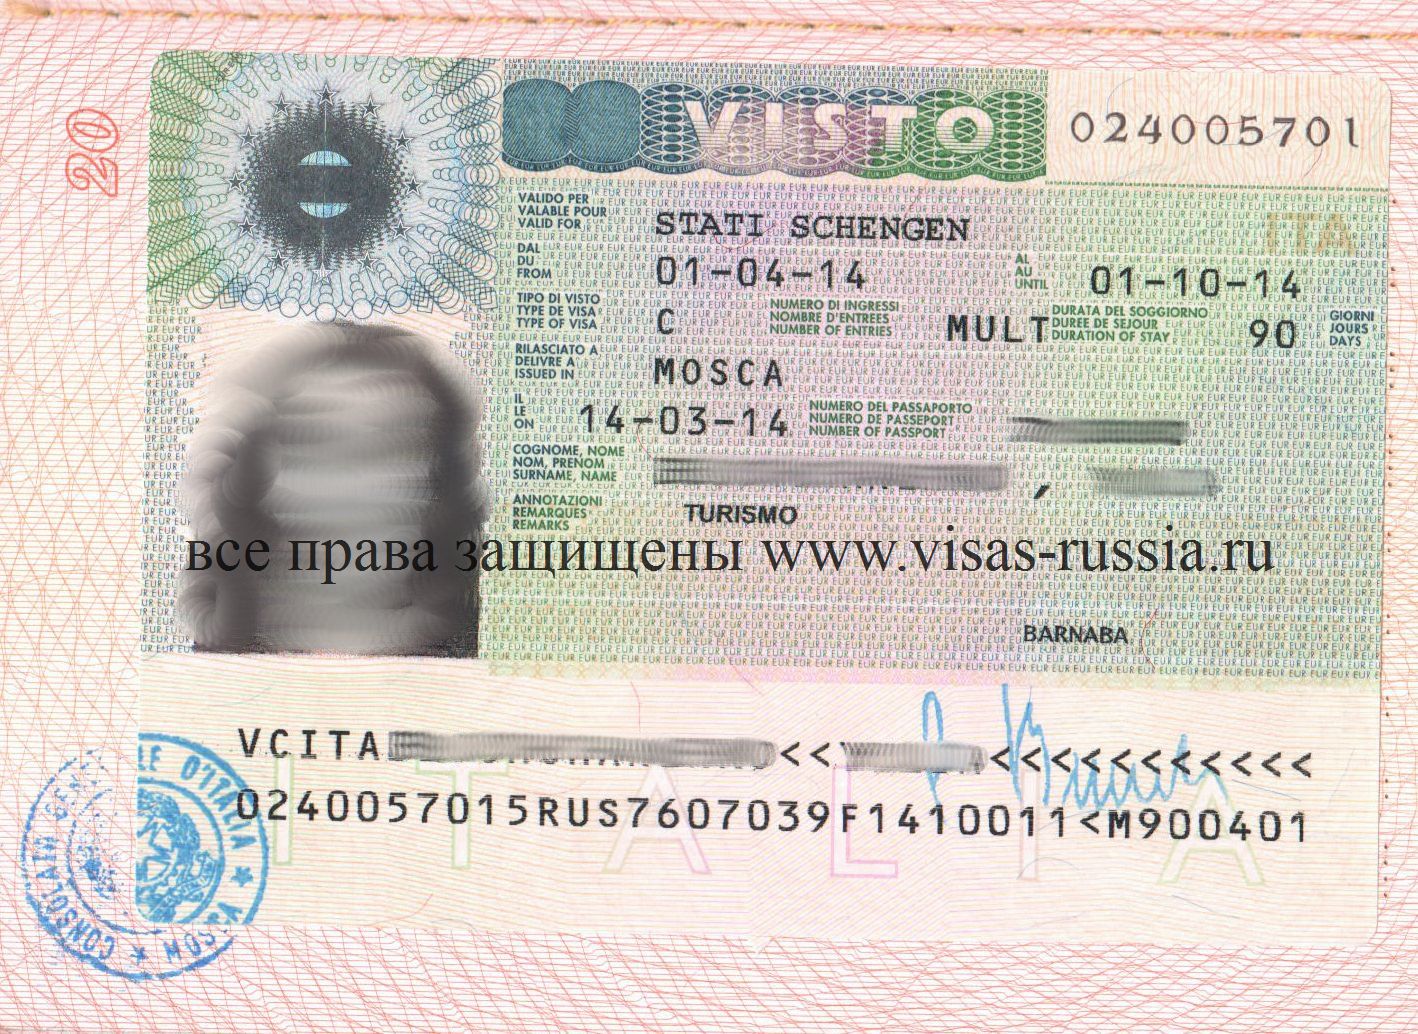 Виза на мальдивы: нужна ли для россиян, безвизовый въезд и сроки пребывания в стране